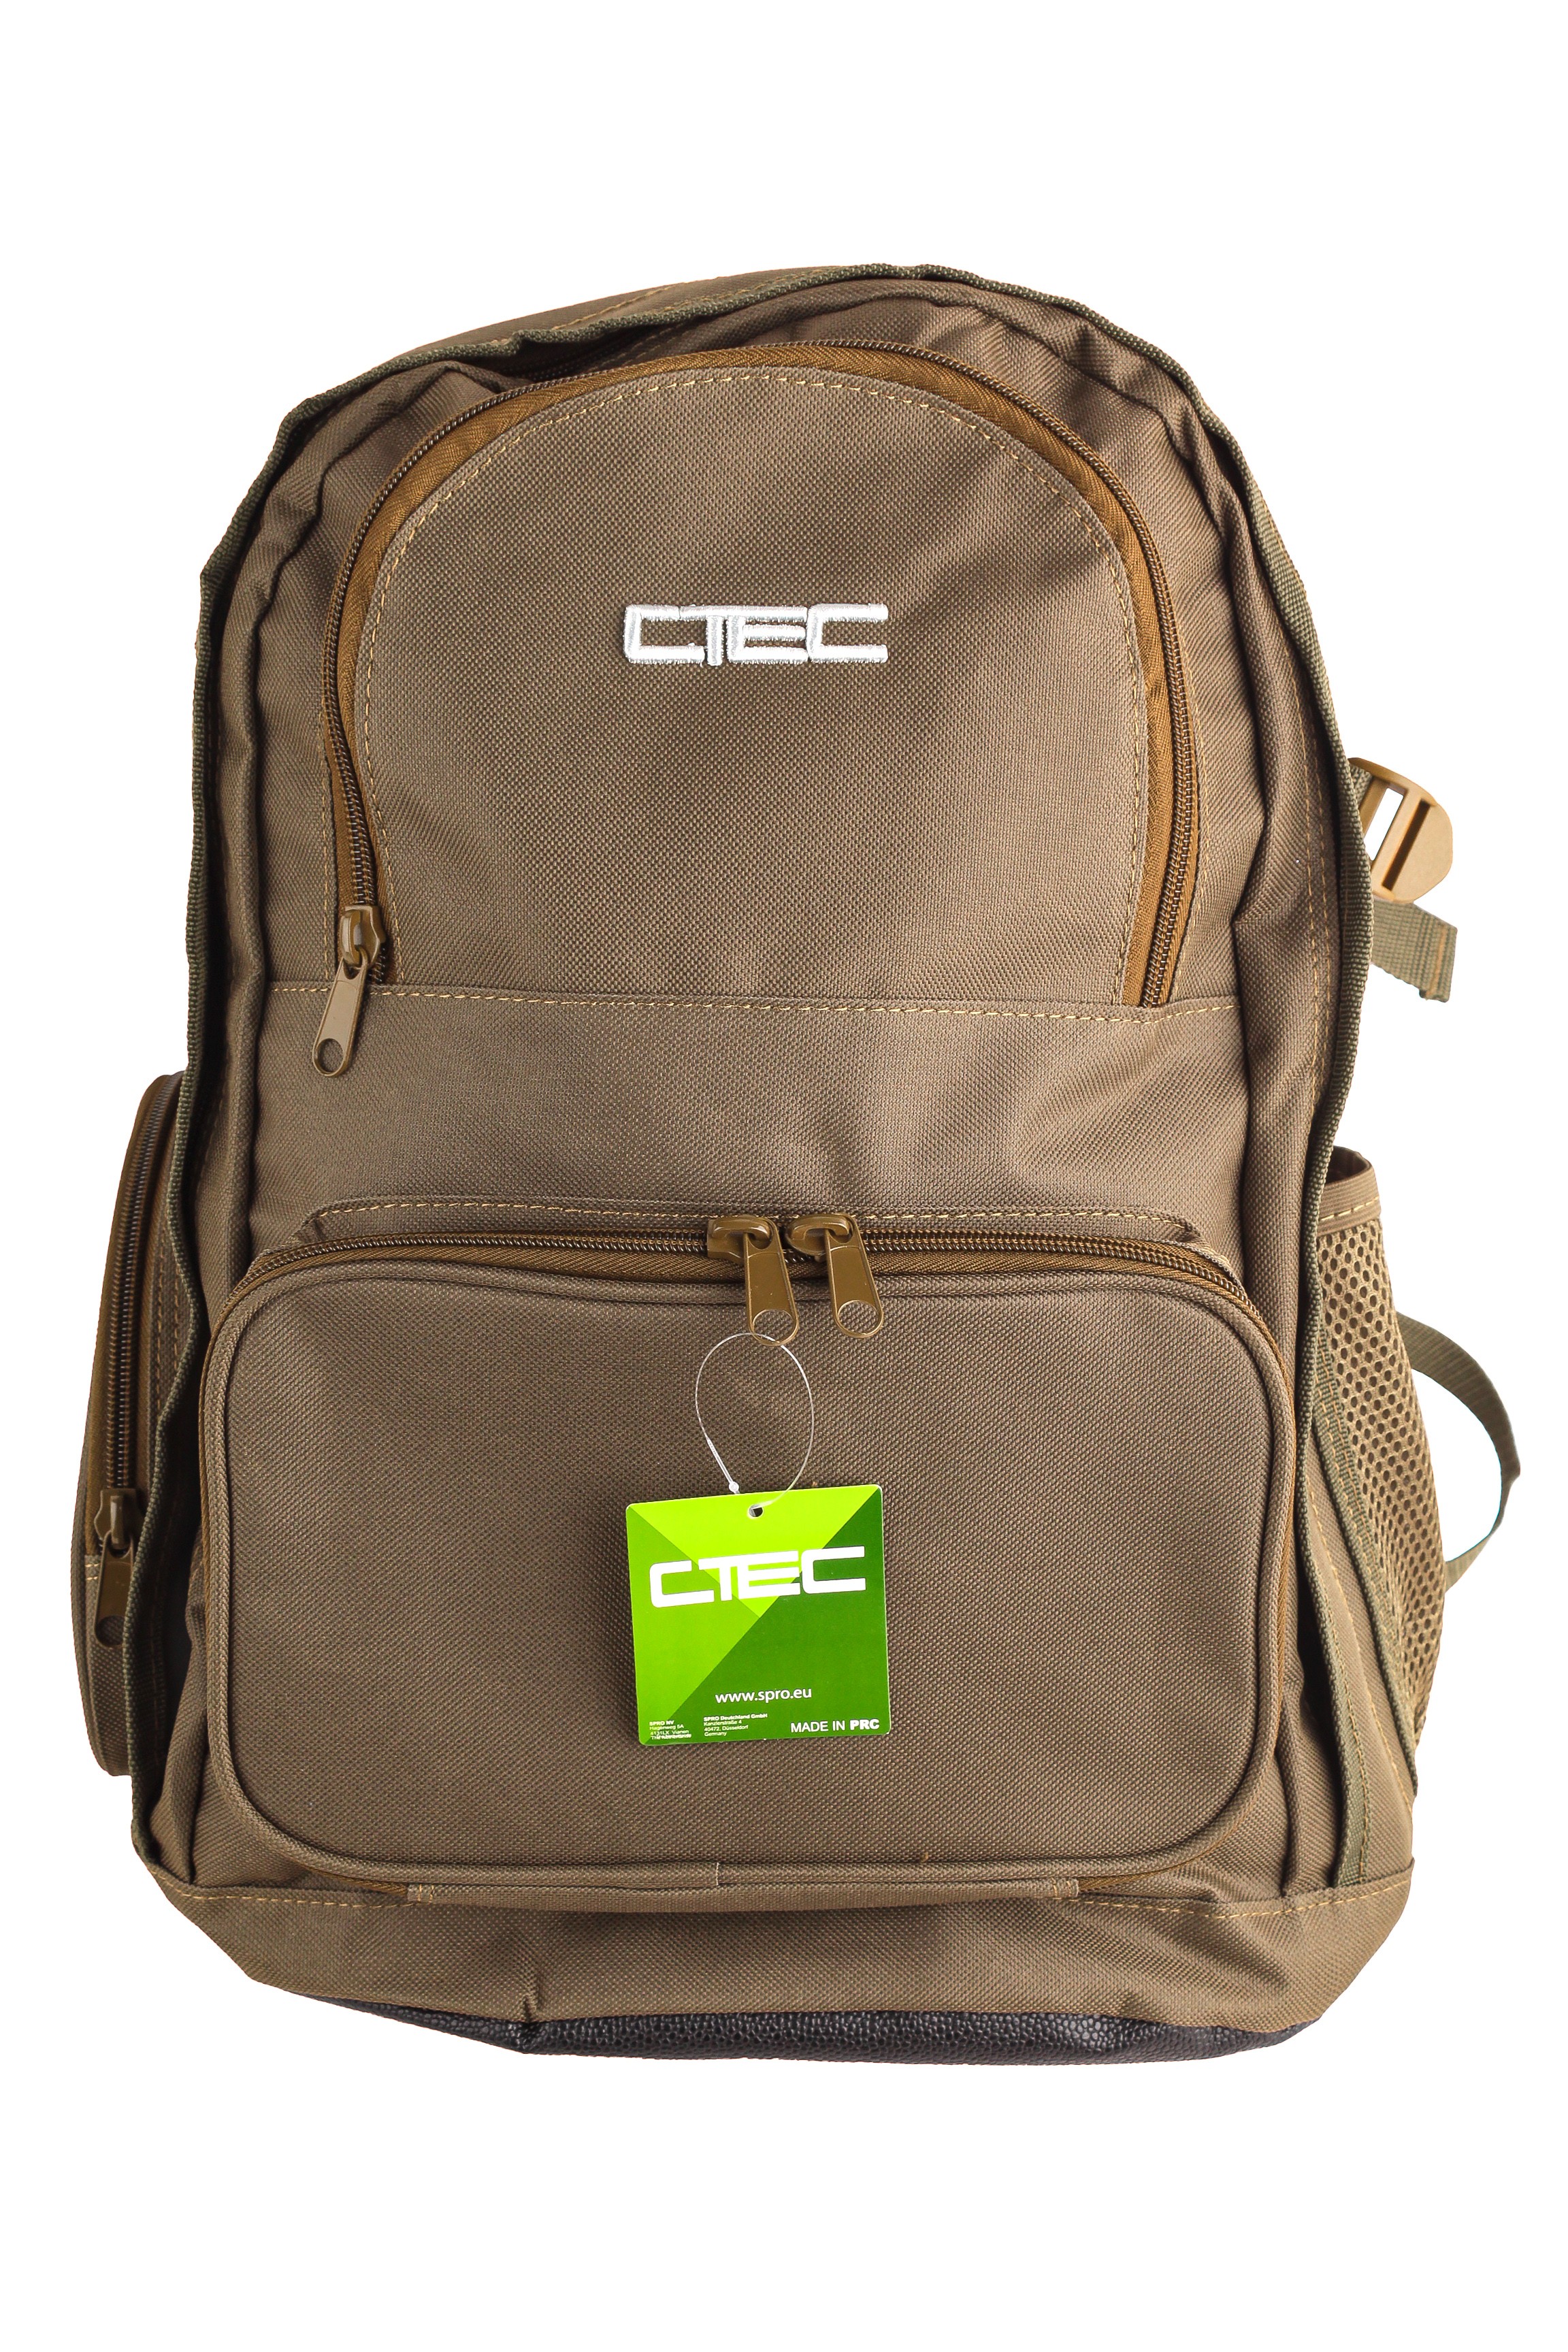 Рюкзак SPRO Backpack - фото 1